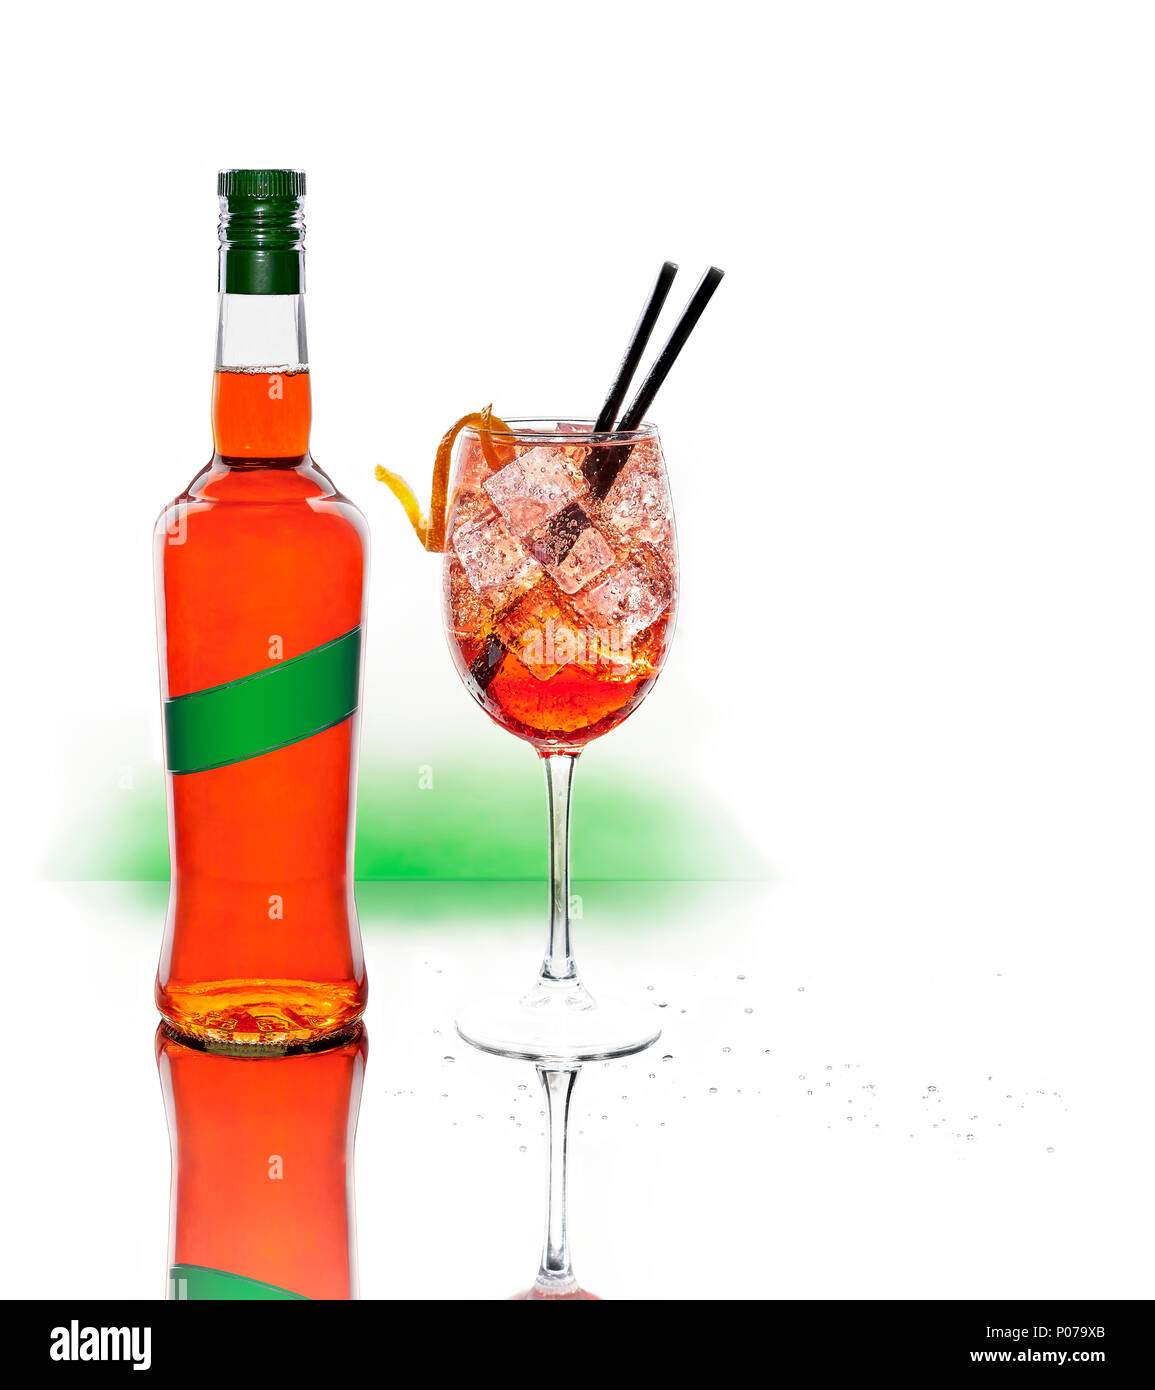 Une bouteille d'alcool et une tasse de Spritz. Cocktail glacé à l'apéritif italien typique ou apericena sur fond blanc. Banque D'Images